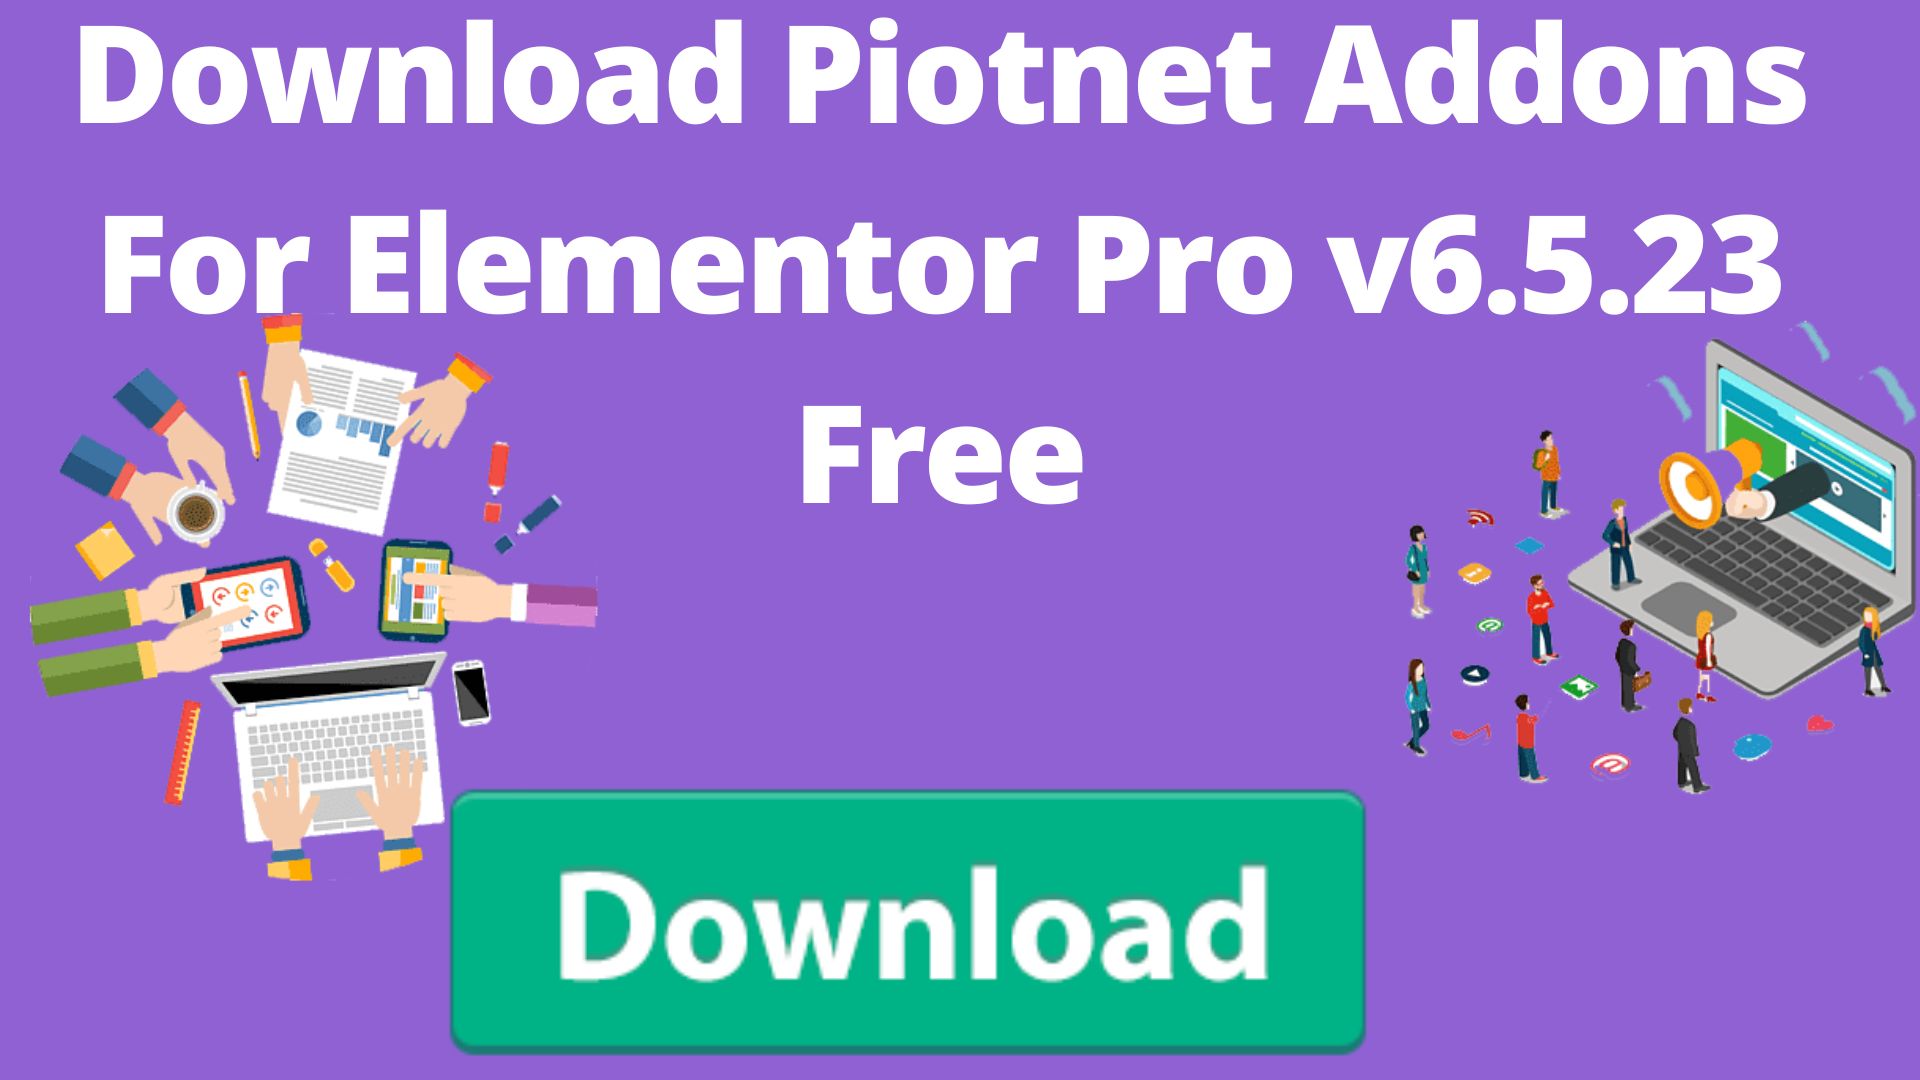 Download Piotnet Addons For Elementor Pro V6.5.23 Free